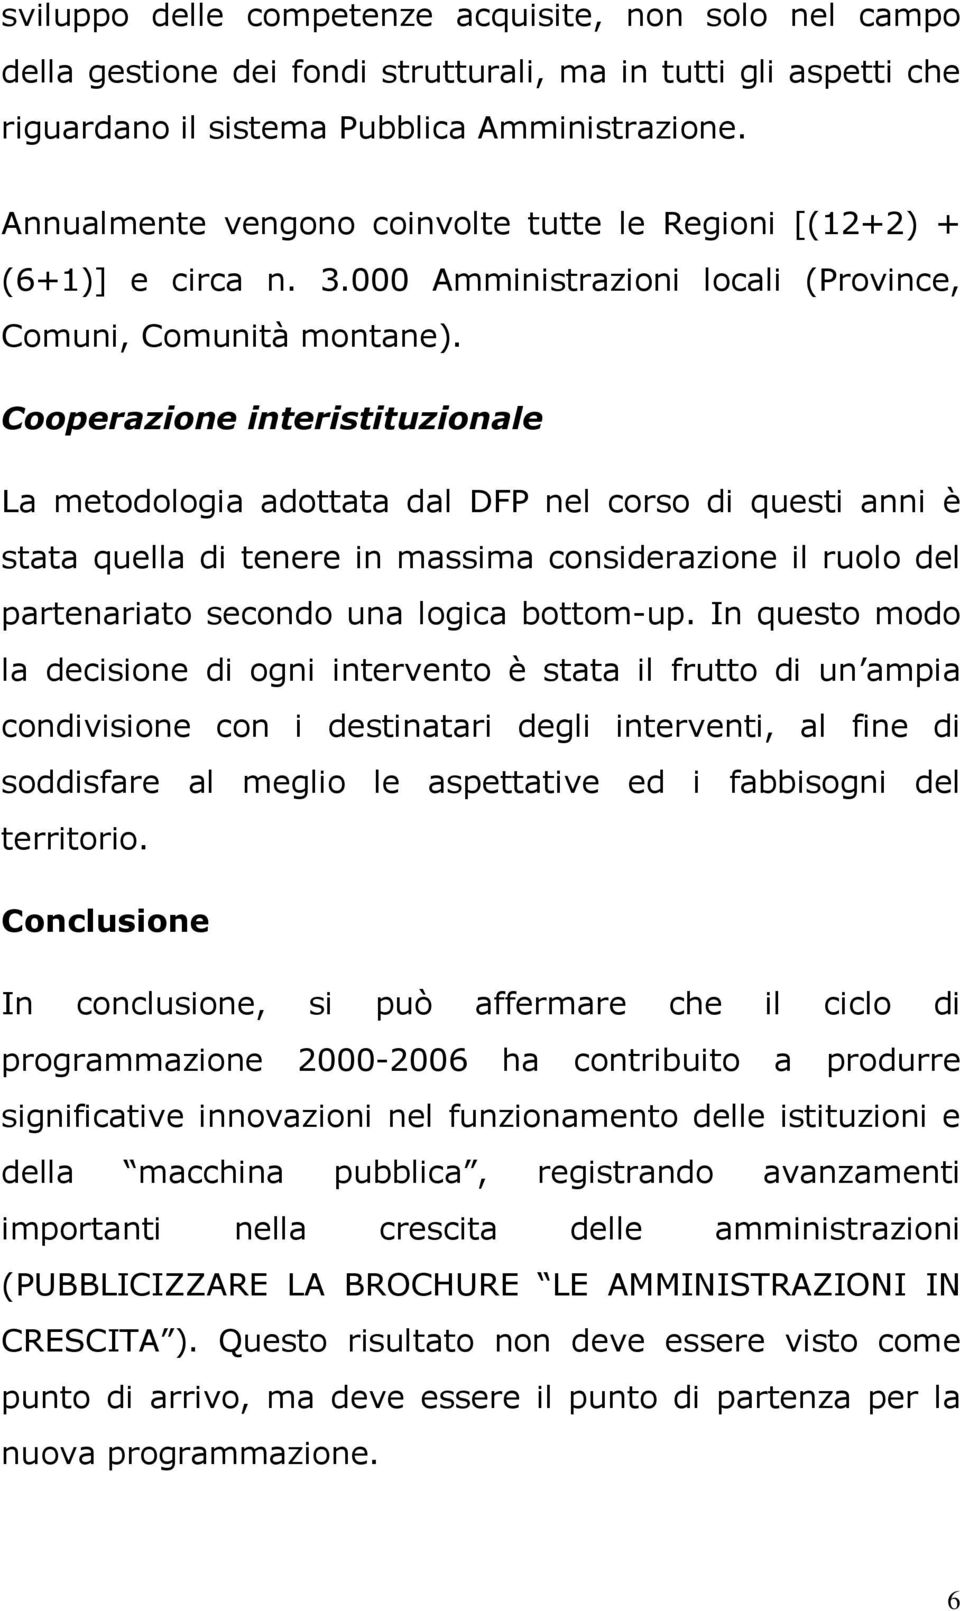 Cooperazione interistituzionale La metodologia adottata dal DFP nel corso di questi anni è stata quella di tenere in massima considerazione il ruolo del partenariato secondo una logica bottom-up.